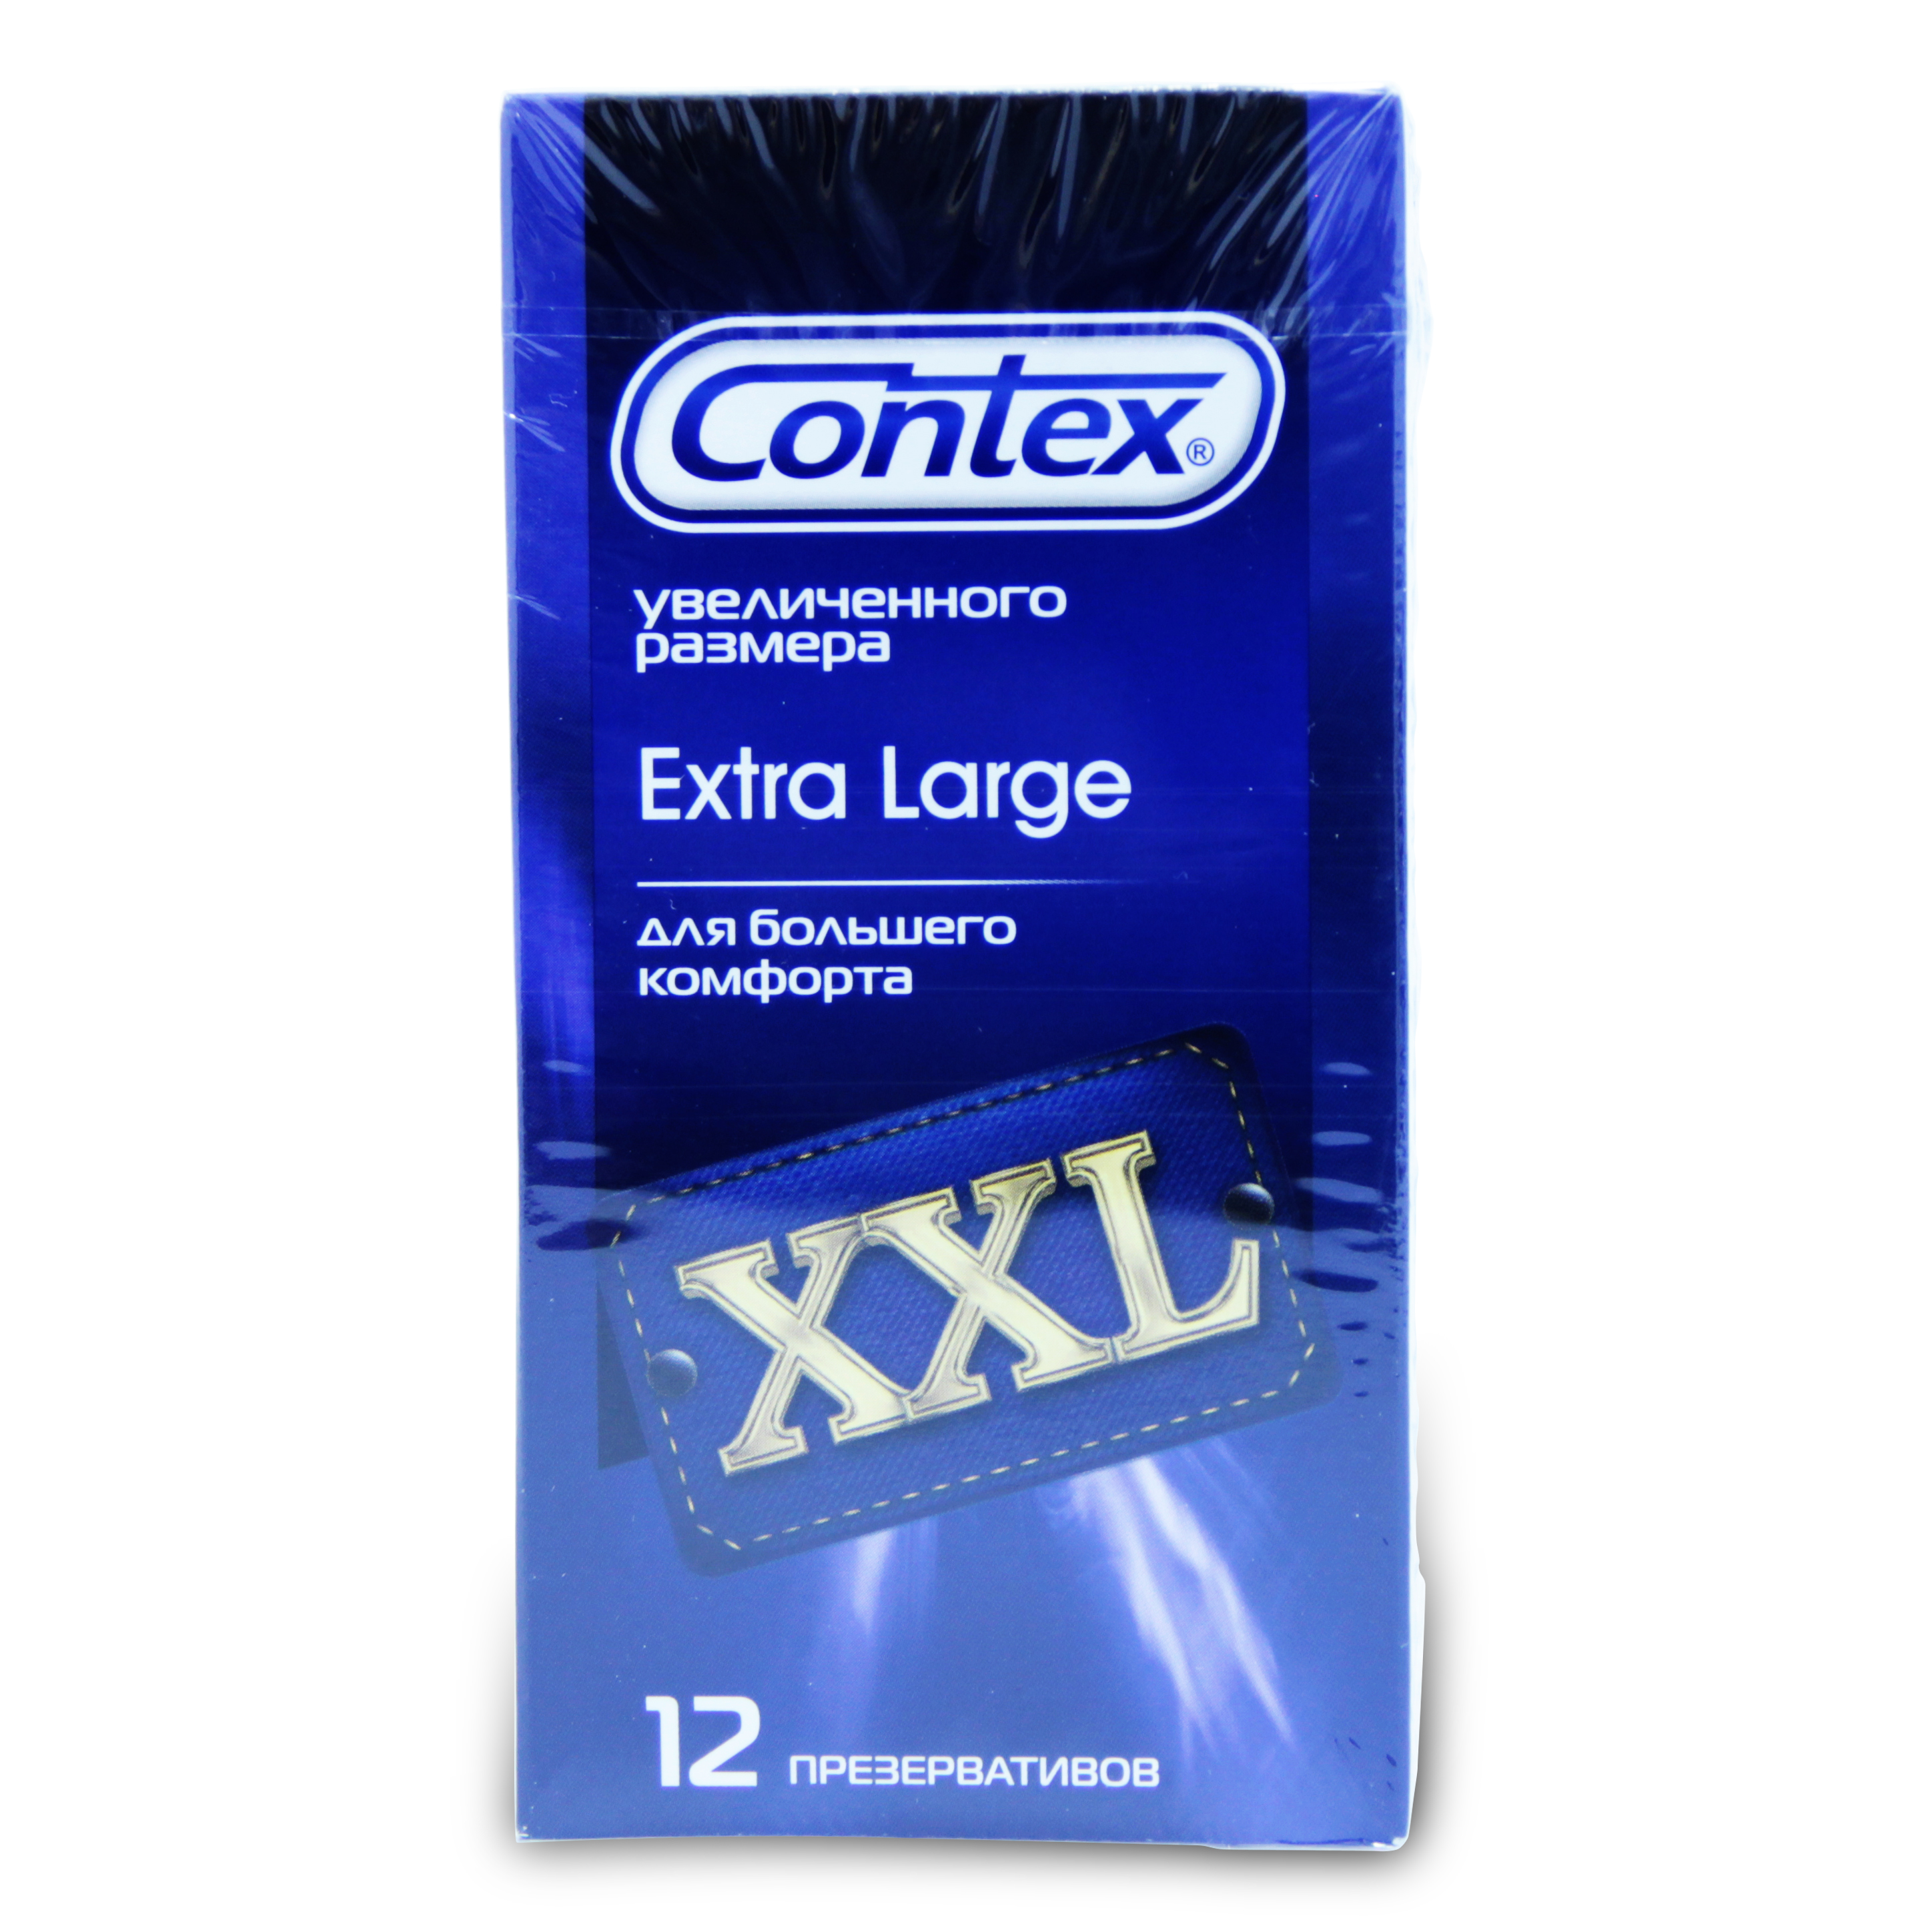 Купить Contex [Контекс] Презервативы Extra large XXL увеличенного размера 12 шт., LRS Prodacts [ЛРС Продактс], латекс